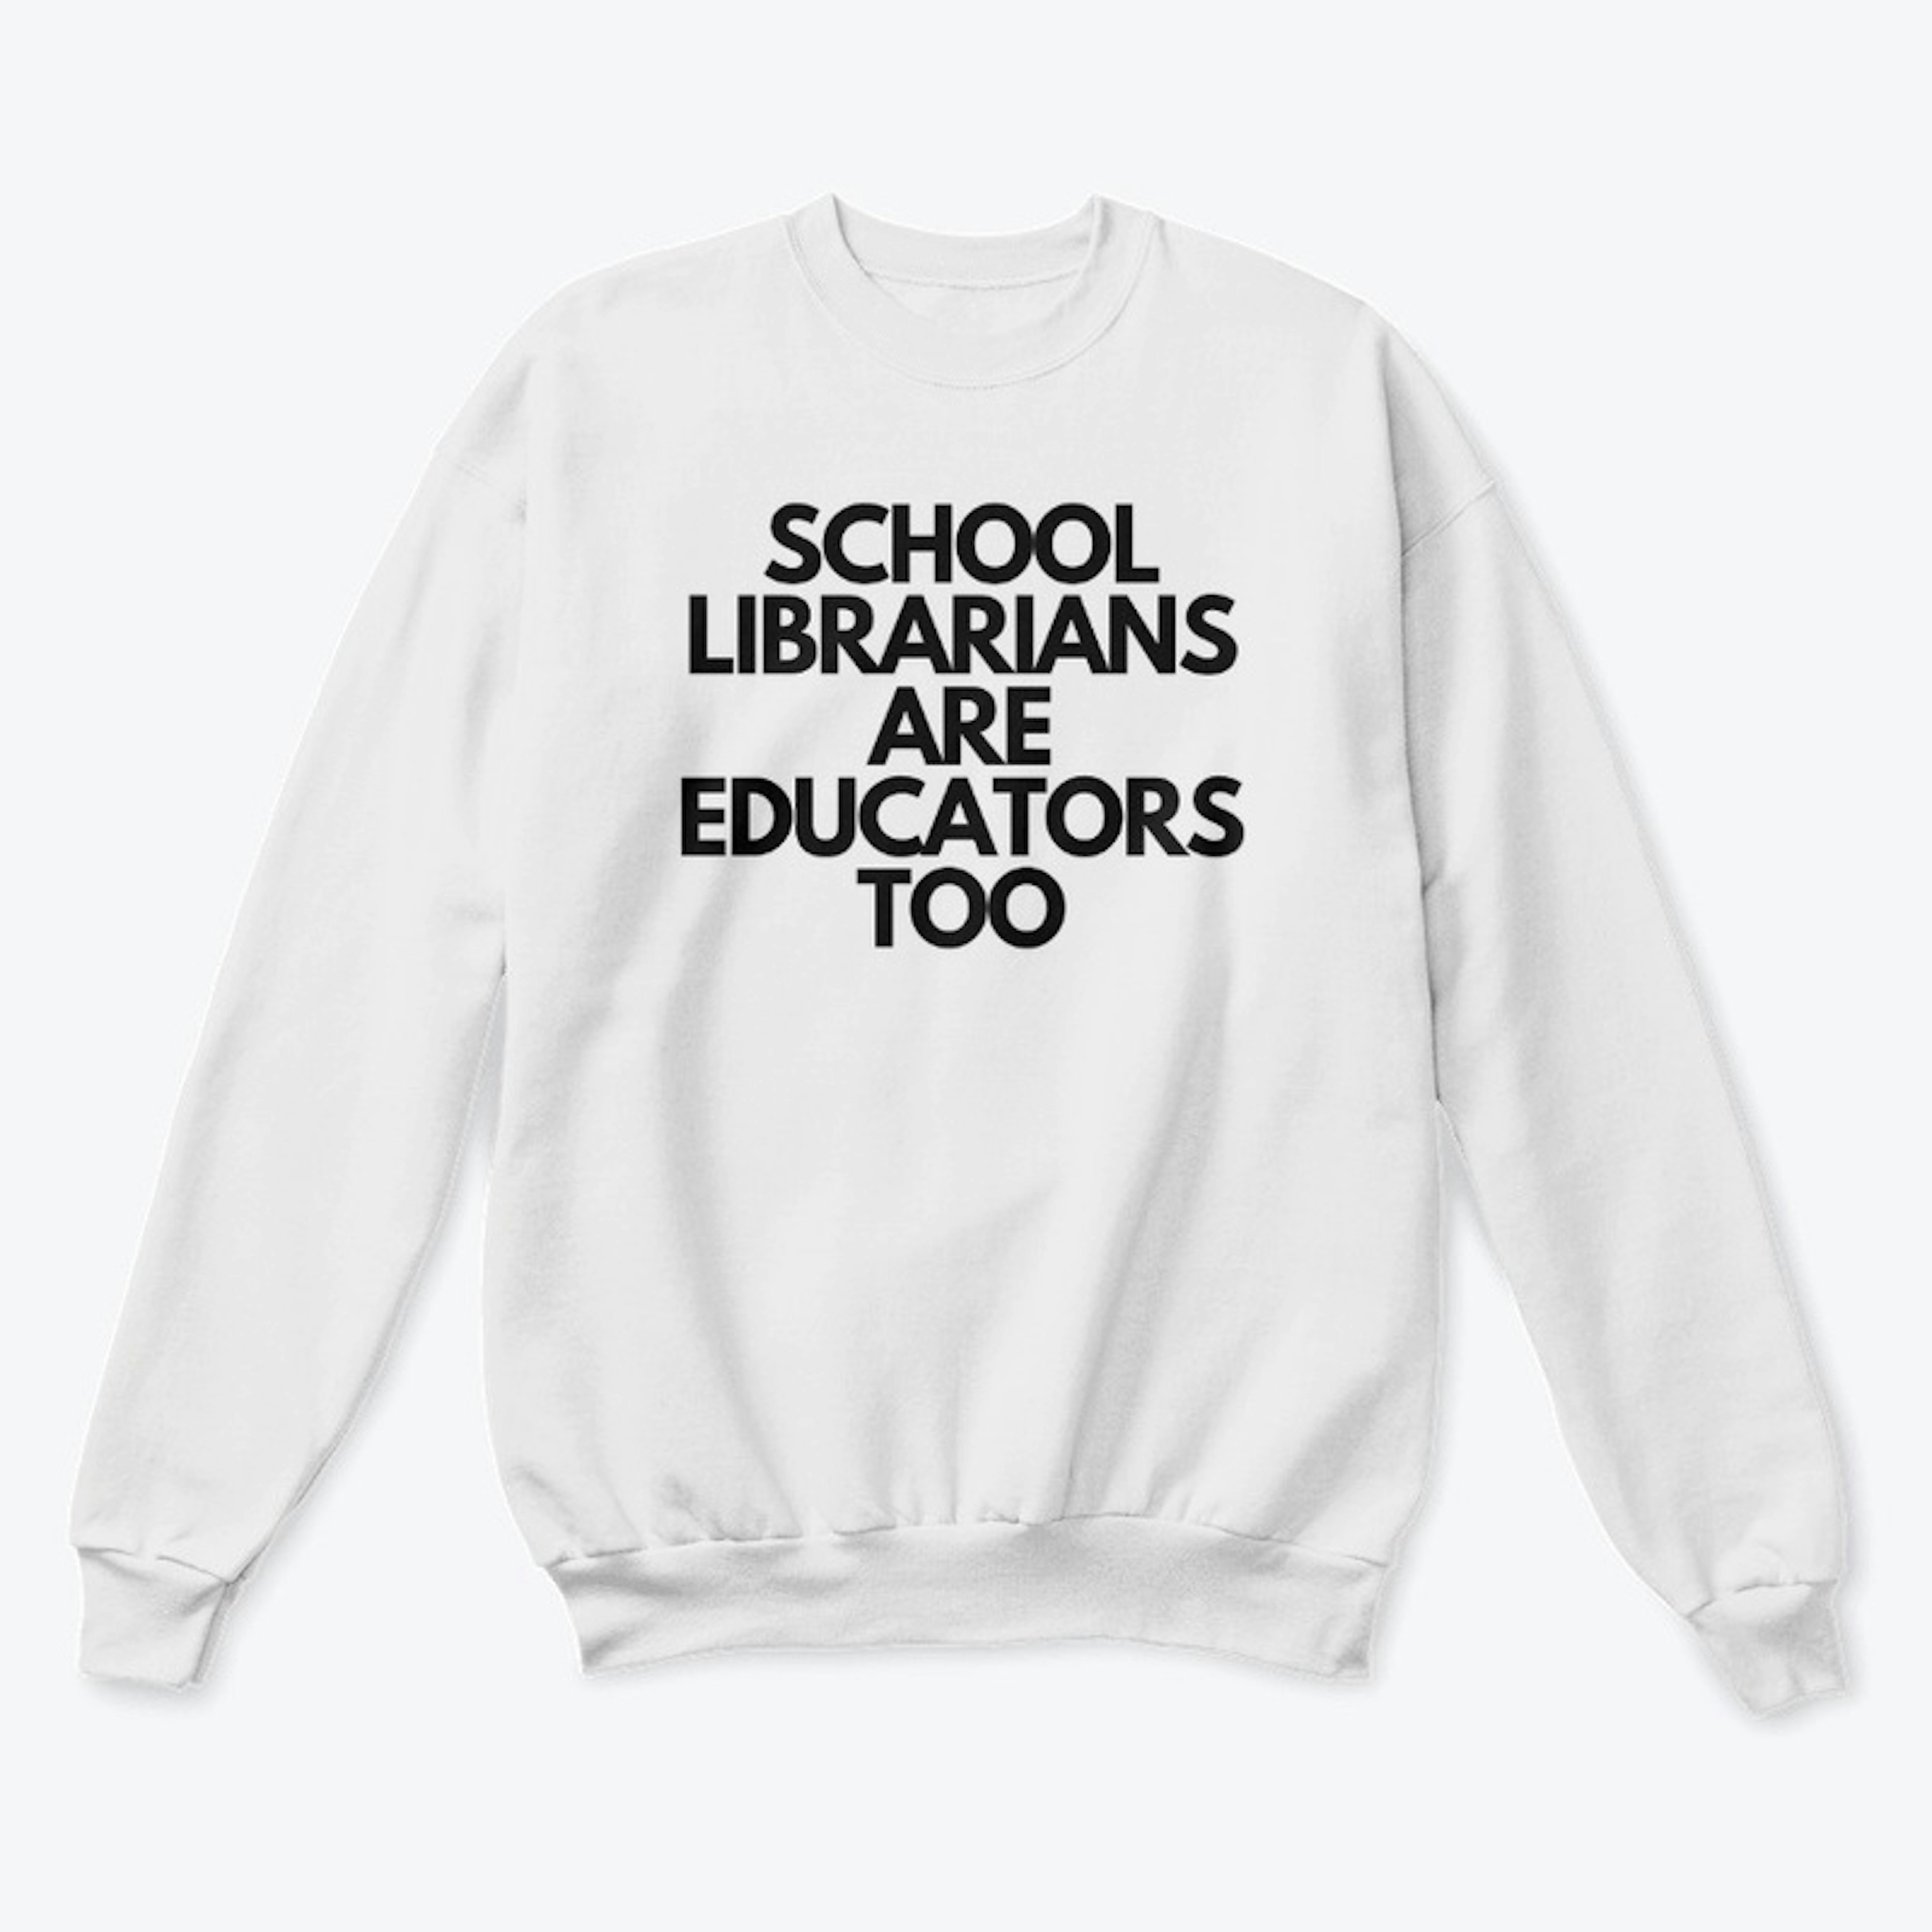 School Librarians Are Educators Too (I)